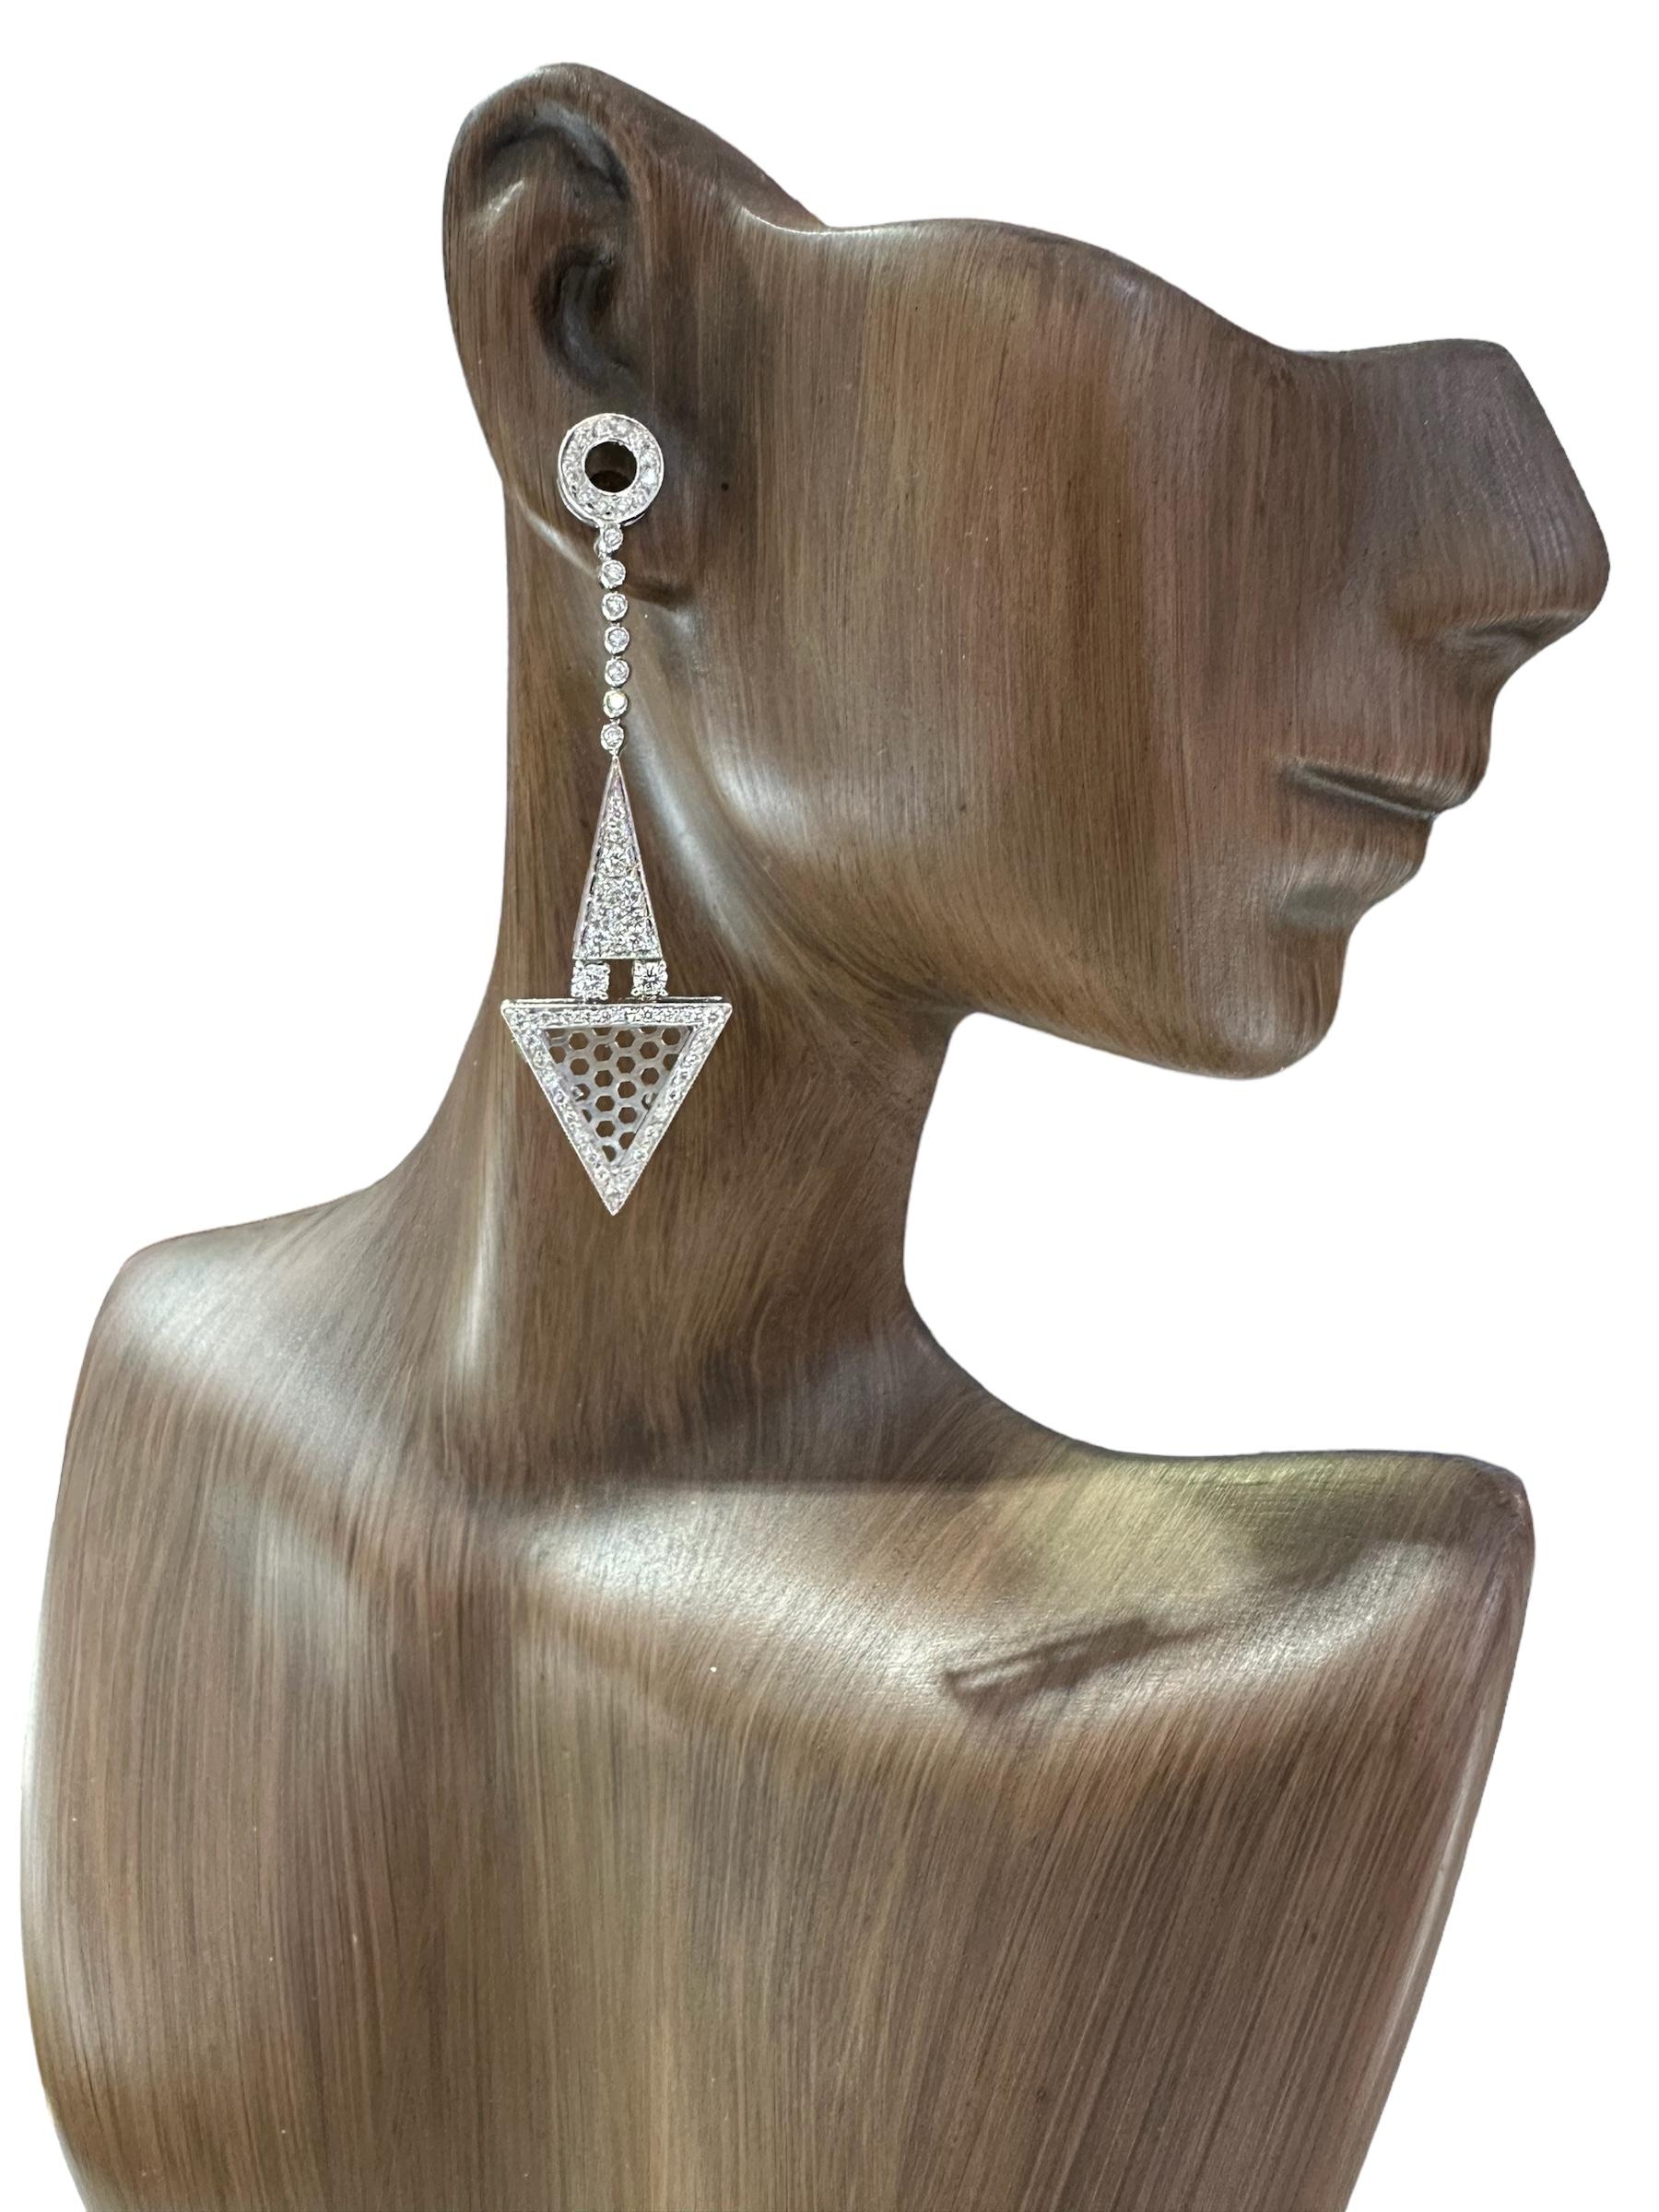 Entfliehen Sie dem Gewöhnlichen mit diesen kühnen und schön gestalteten Diamantohrringen von Alex & Co. Diese Ohrringe aus 18 Karat Weißgold und Diamanten werden von 116 weißen Diamanten mit einem Gesamtgewicht von ca. 1,22 ct. erhellt, die einen